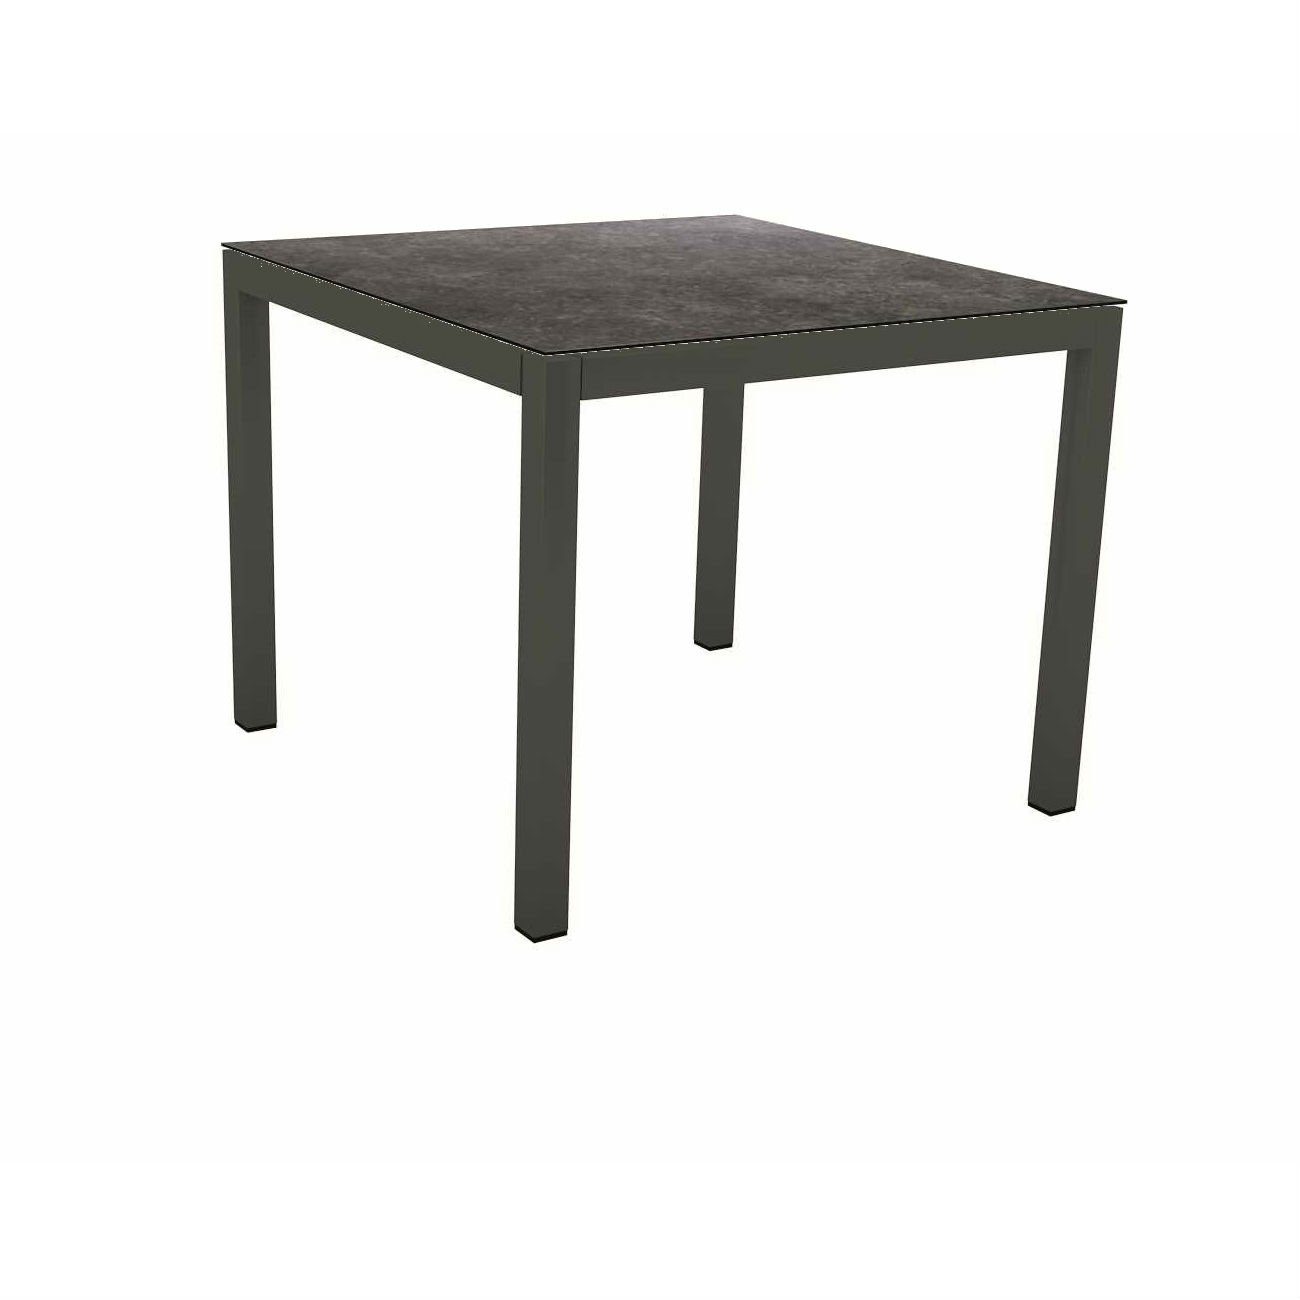 Stern Tischsystem Gartentisch, Gestell Aluminium anthrazit, Tischplatte HPL Vintage grau, Maße: 90x90 cm